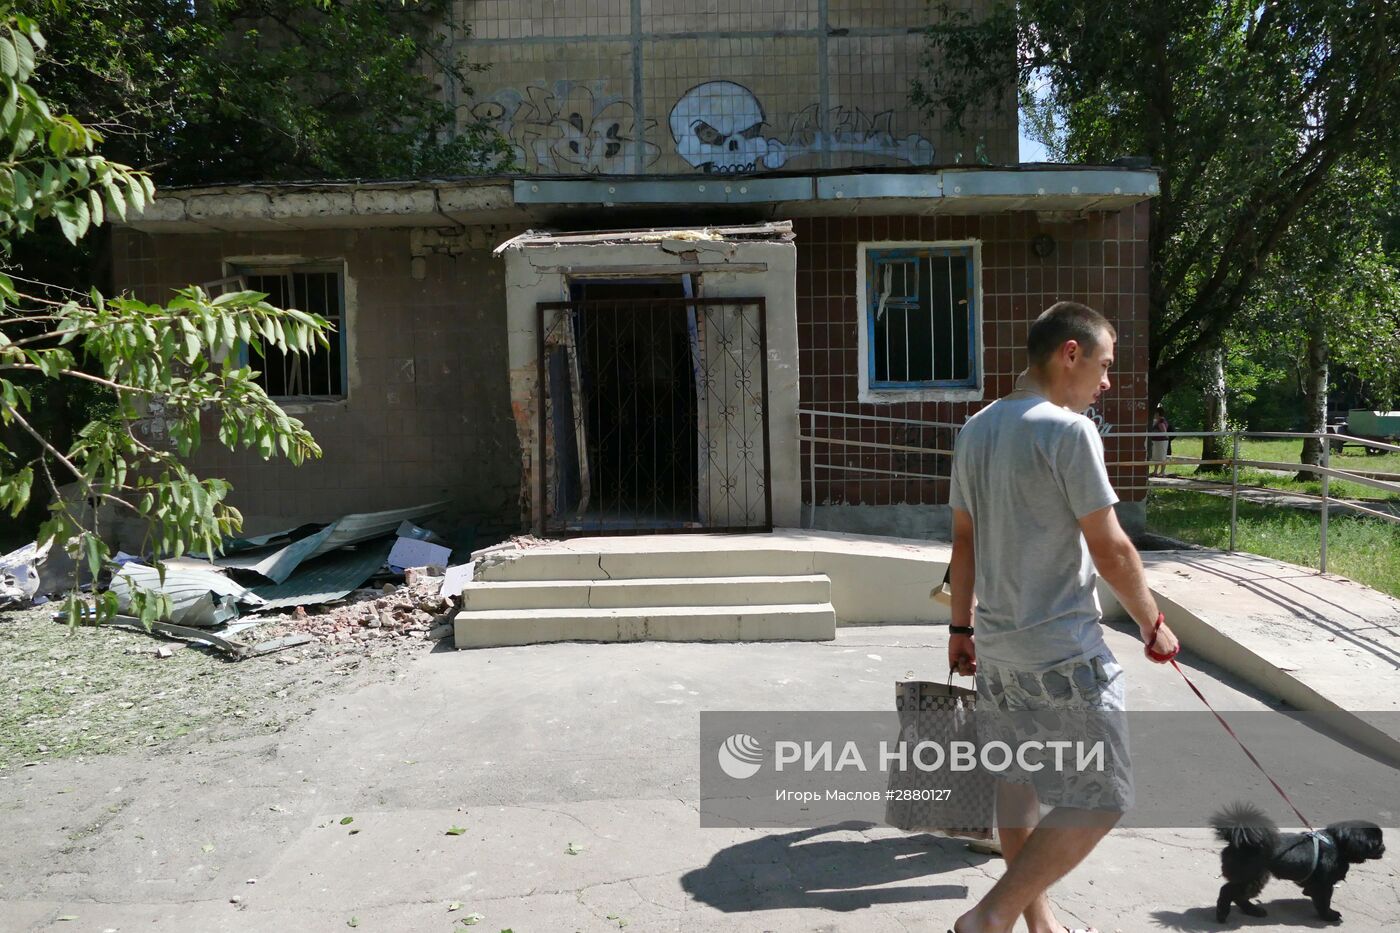 Последствия обстрелов Донецка украинскими силовиками